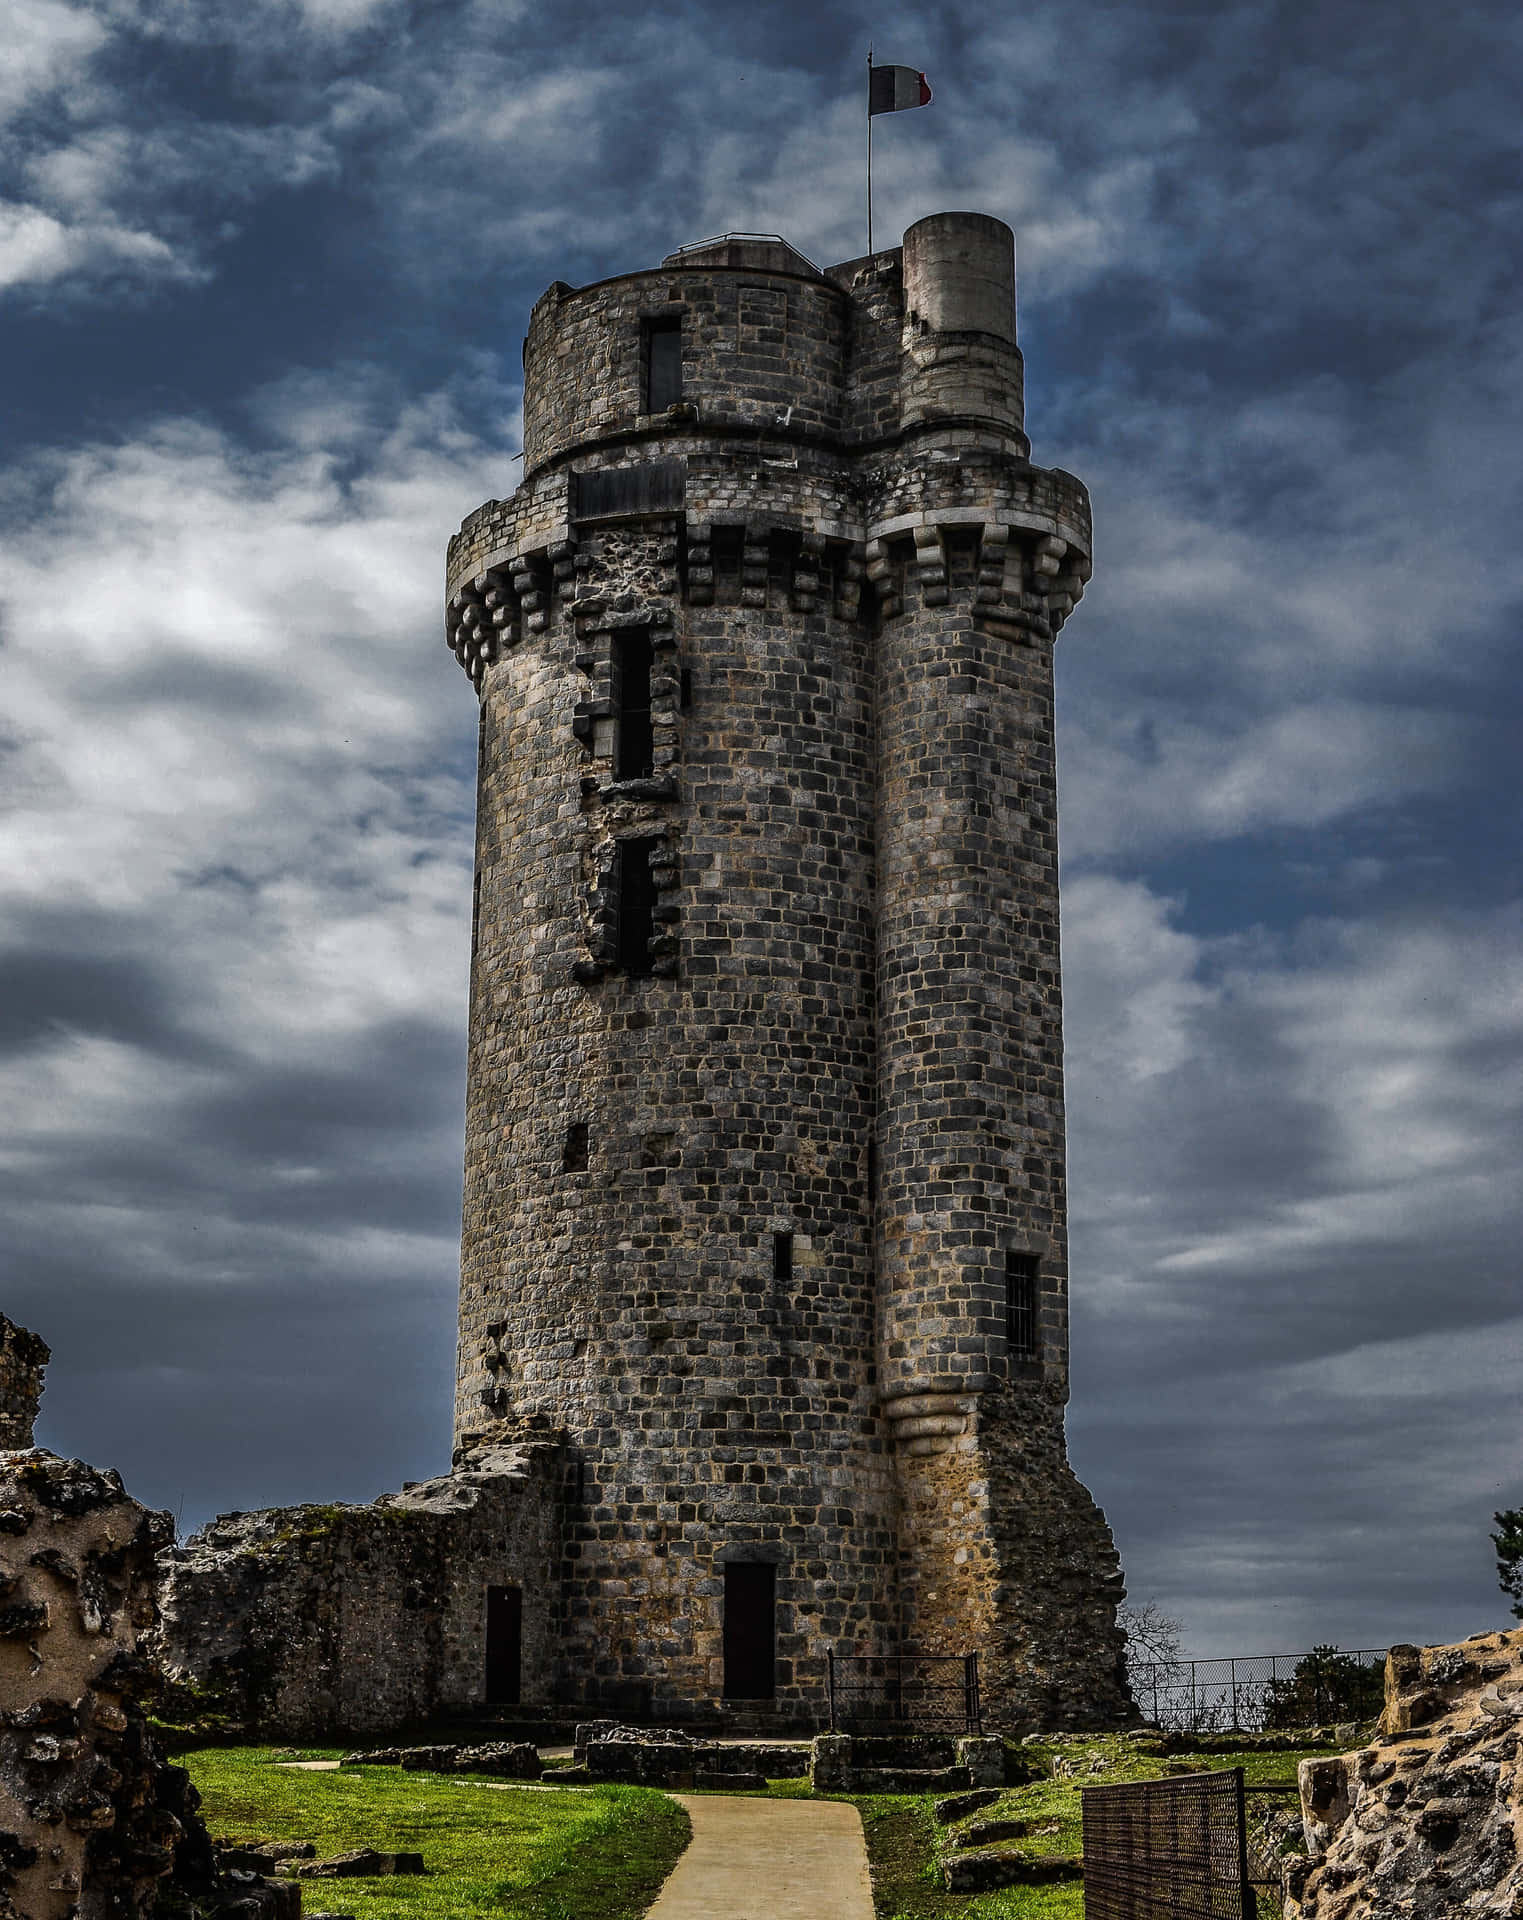 Unavista Impresionante De Un Castillo De Estilo Medieval